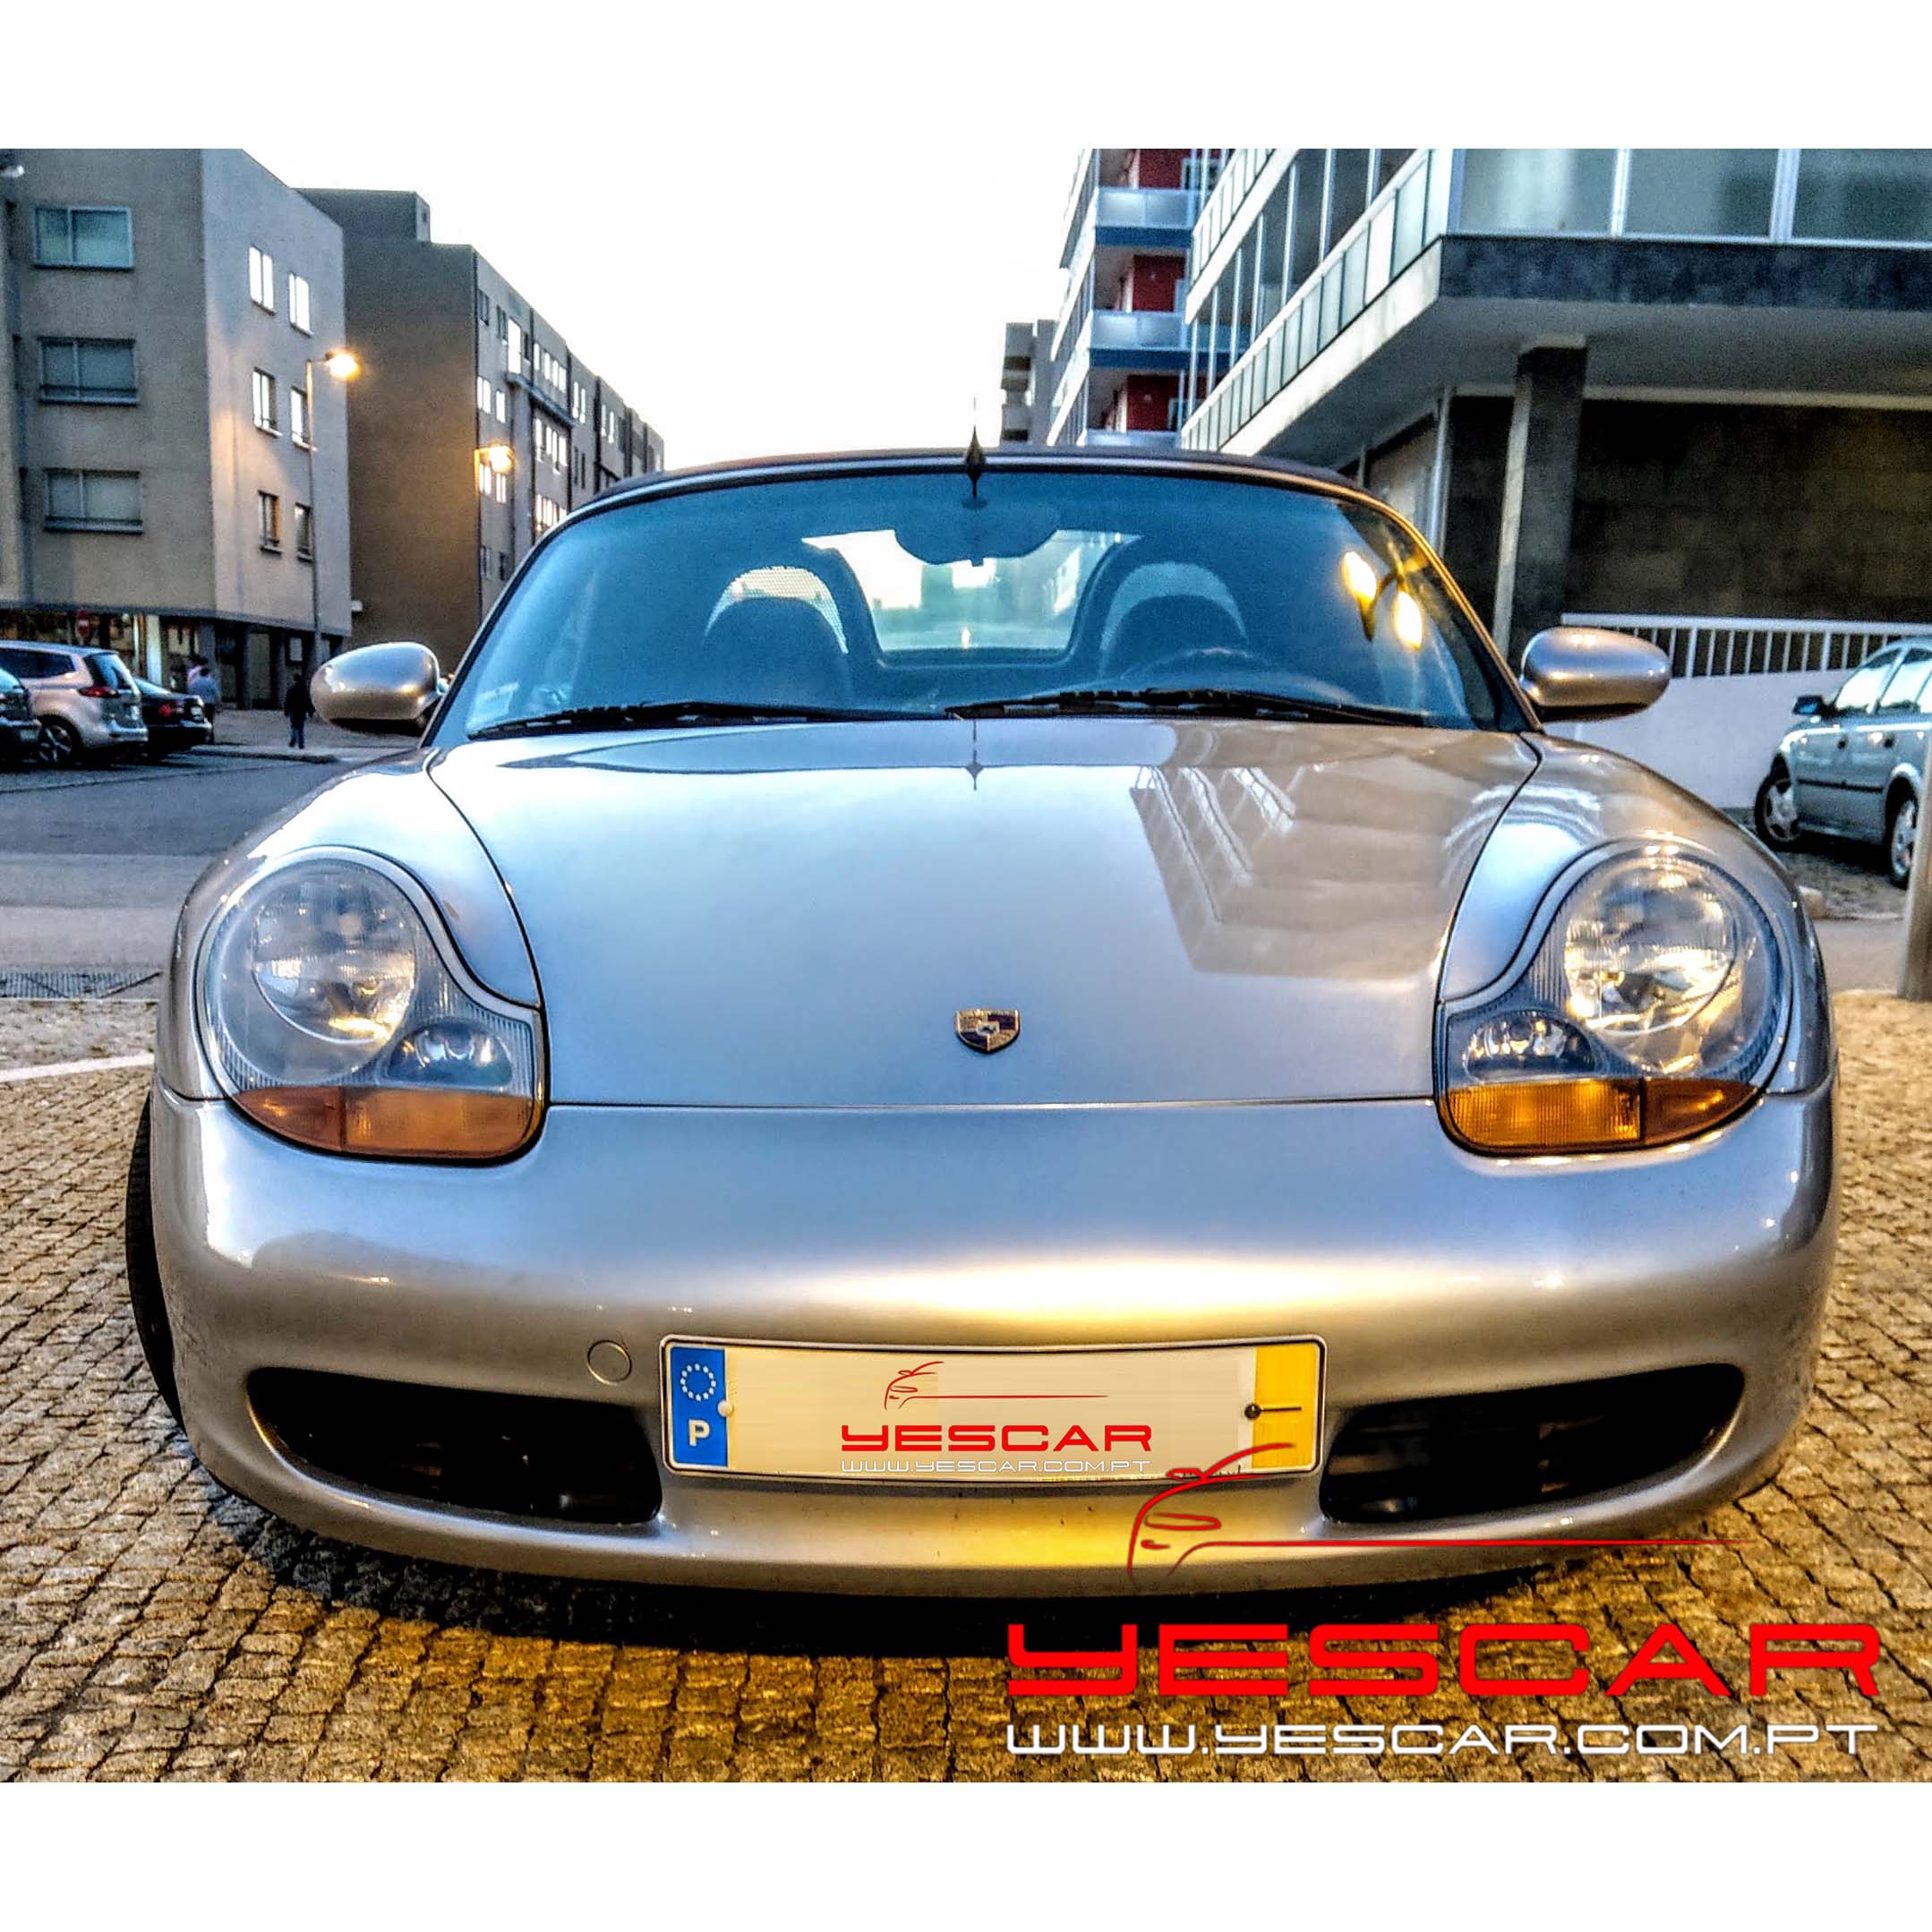 Yescar_Porsche_Boxster q (11)